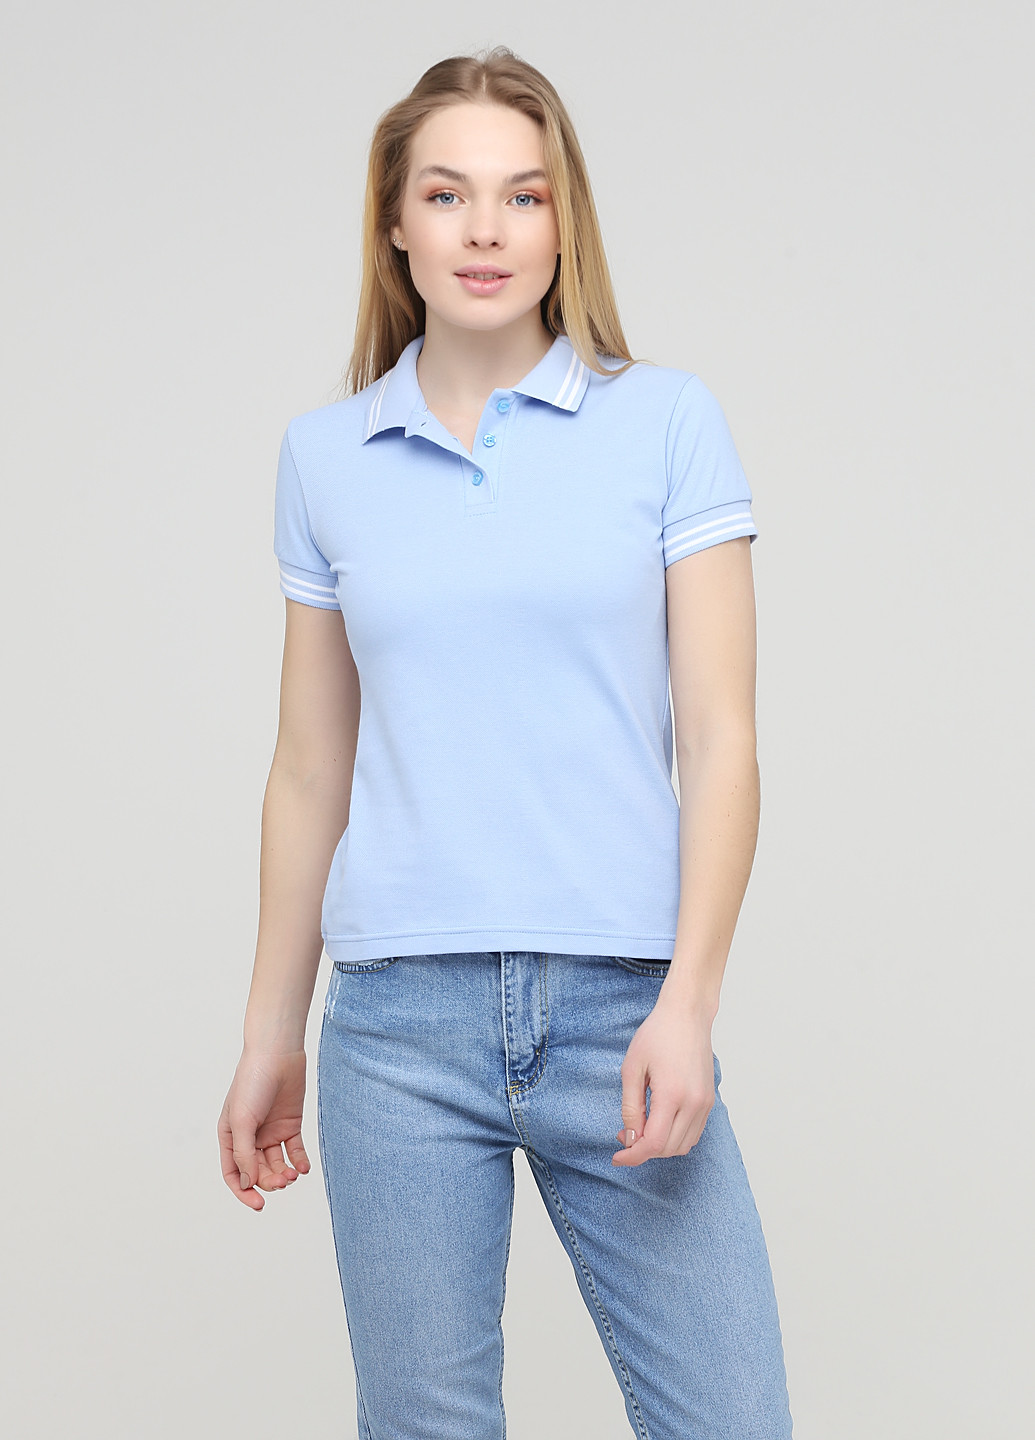 Голубой женская футболка-футболка поло женская классическая цвет светло-голубой Melgo однотонная